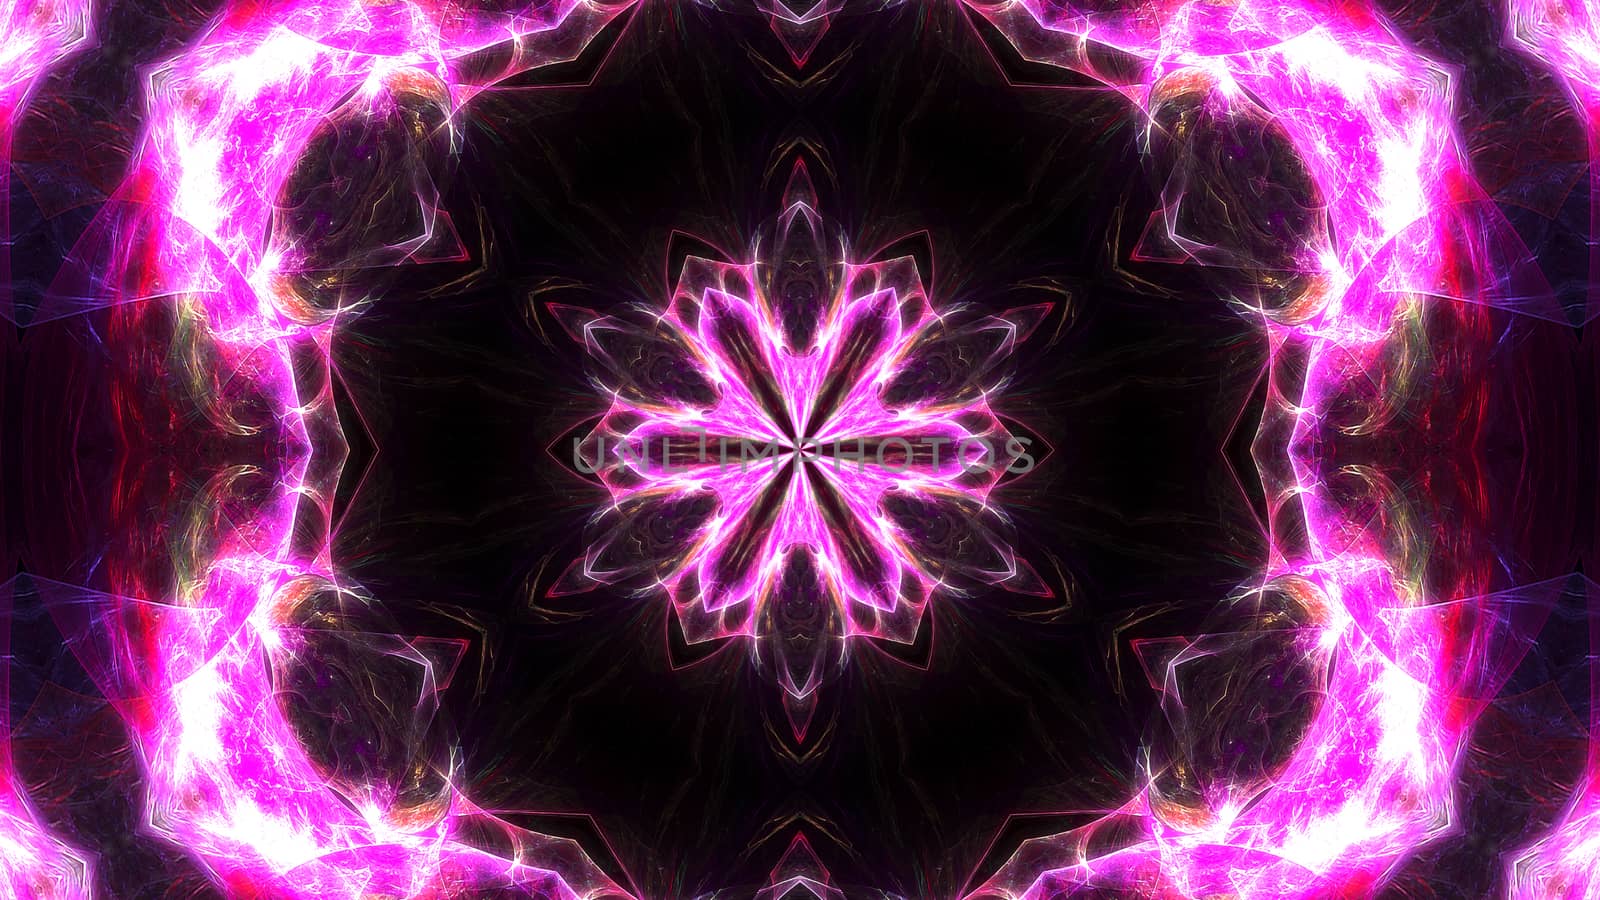 Abstract fractal light background. Digital 3d rendering backdrop.